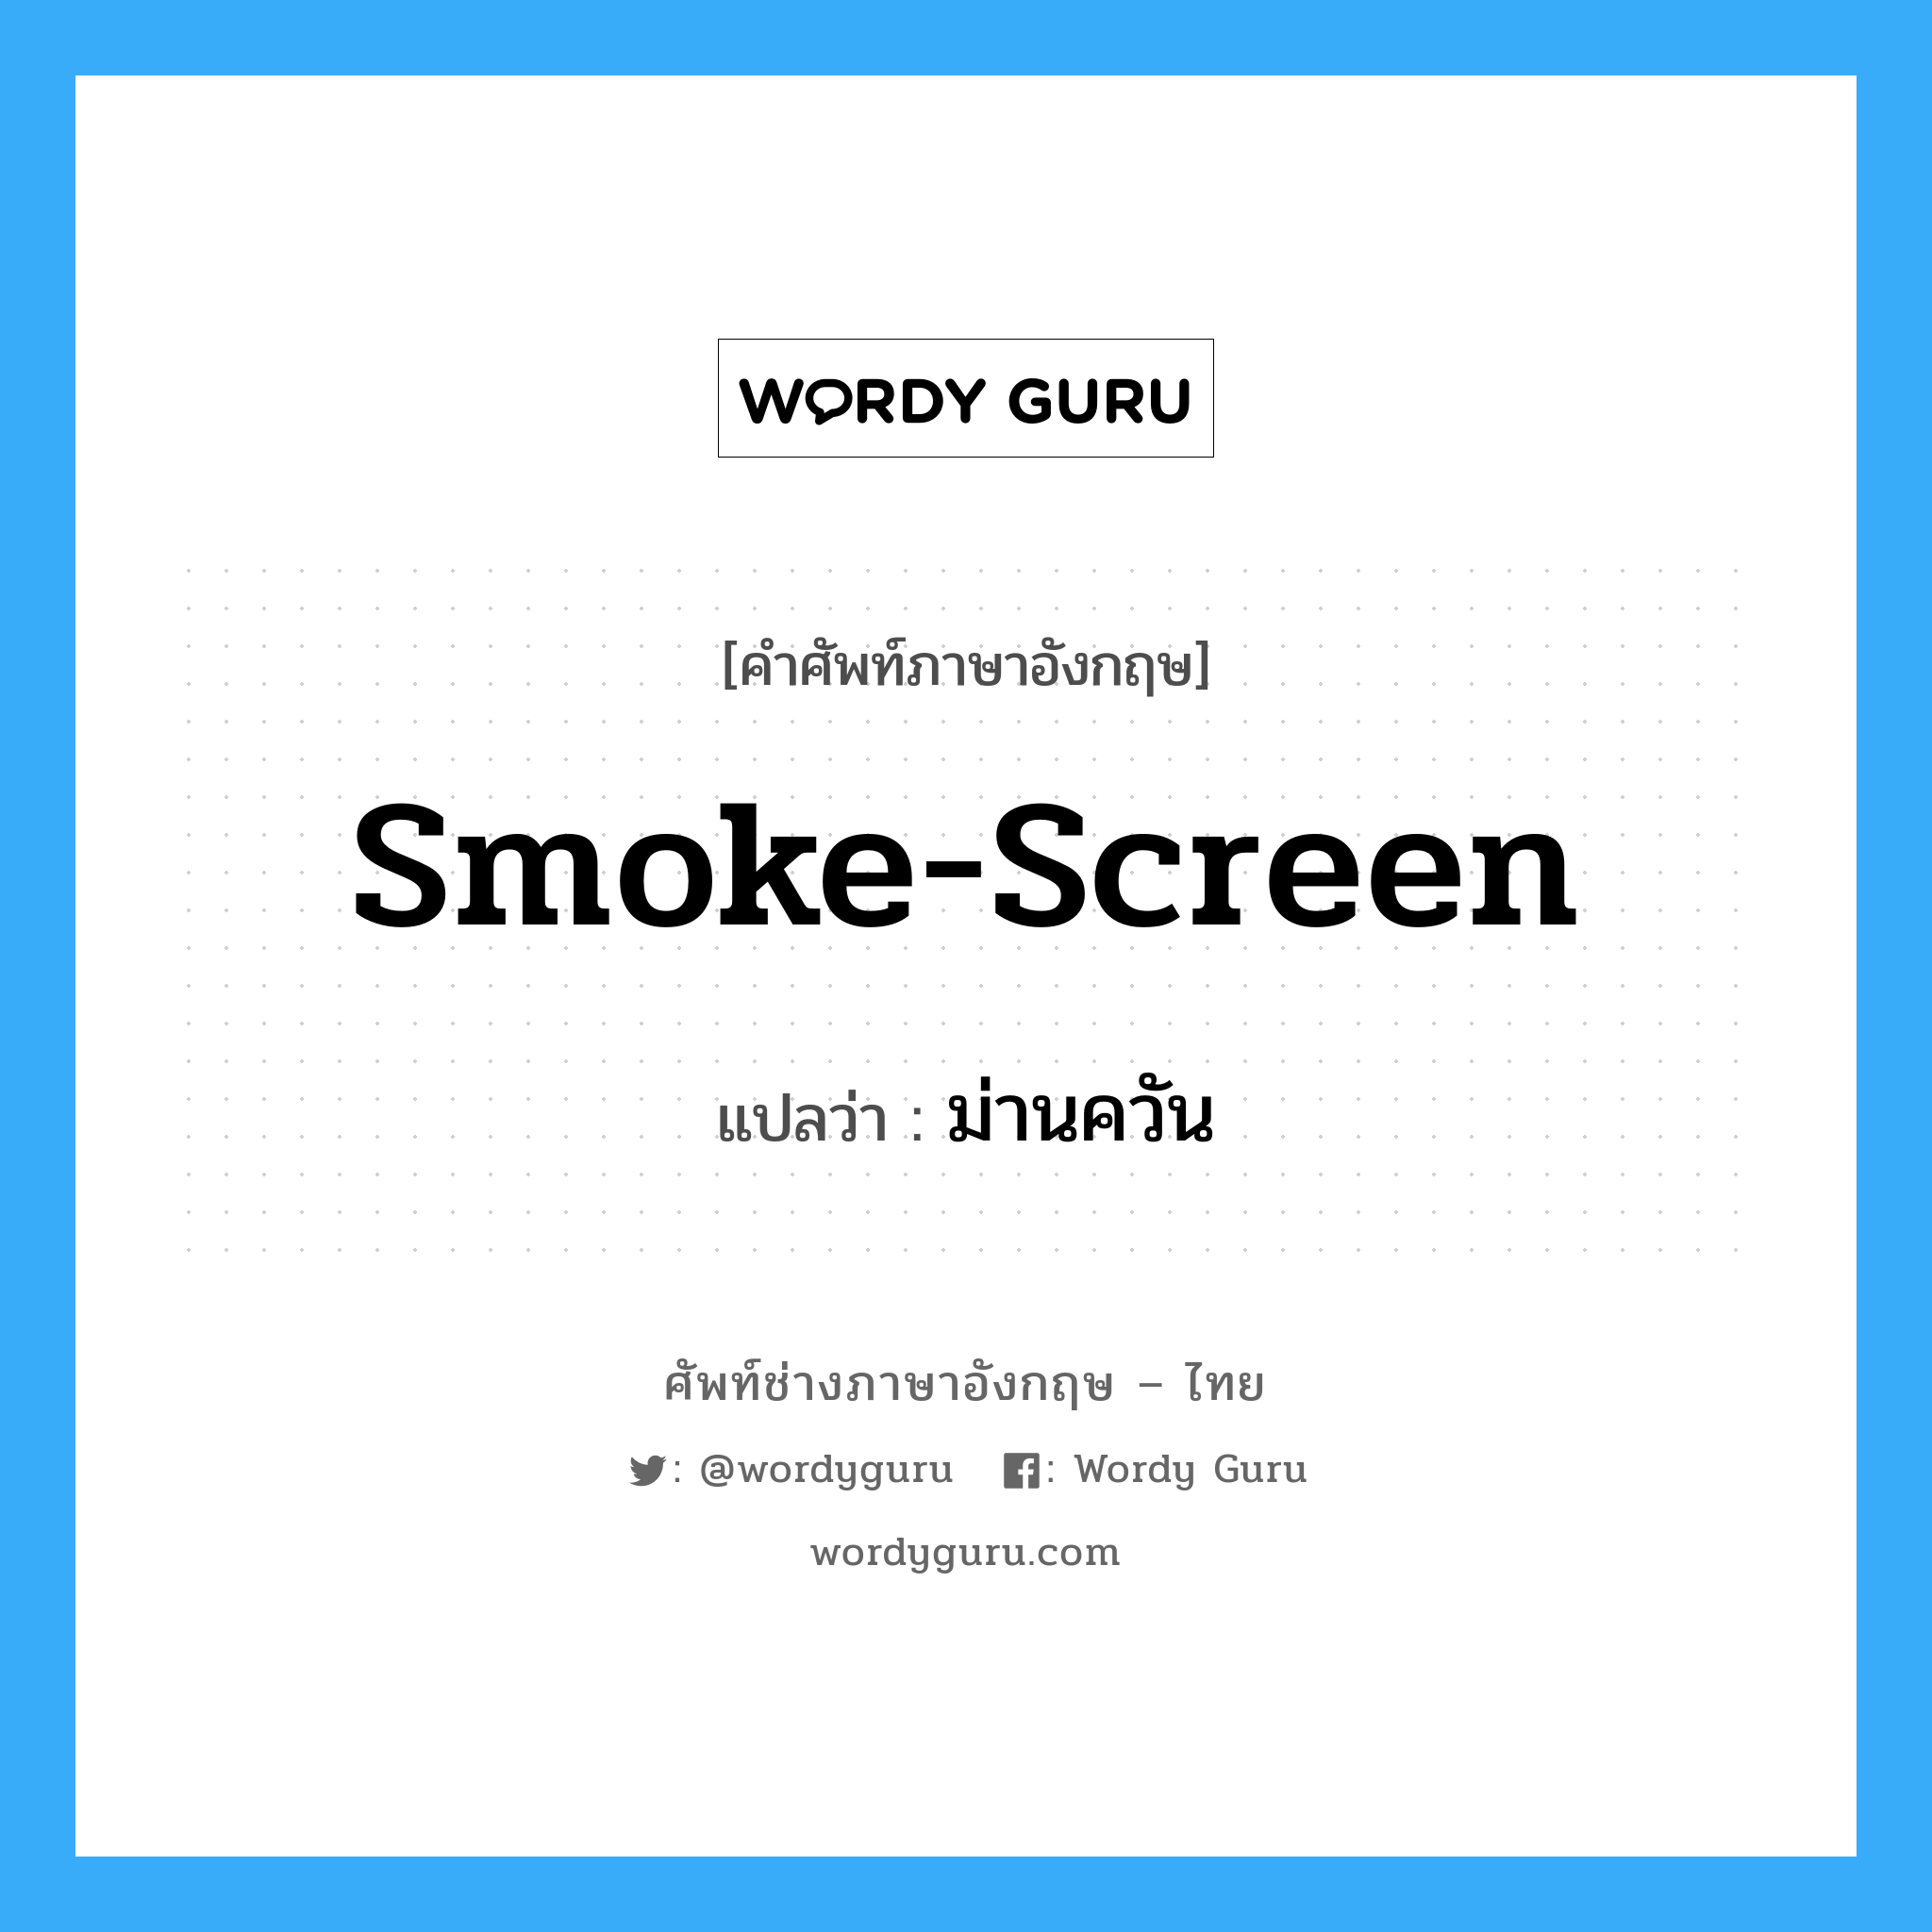 smoke-screen แปลว่า?, คำศัพท์ช่างภาษาอังกฤษ - ไทย smoke-screen คำศัพท์ภาษาอังกฤษ smoke-screen แปลว่า ม่านควัน